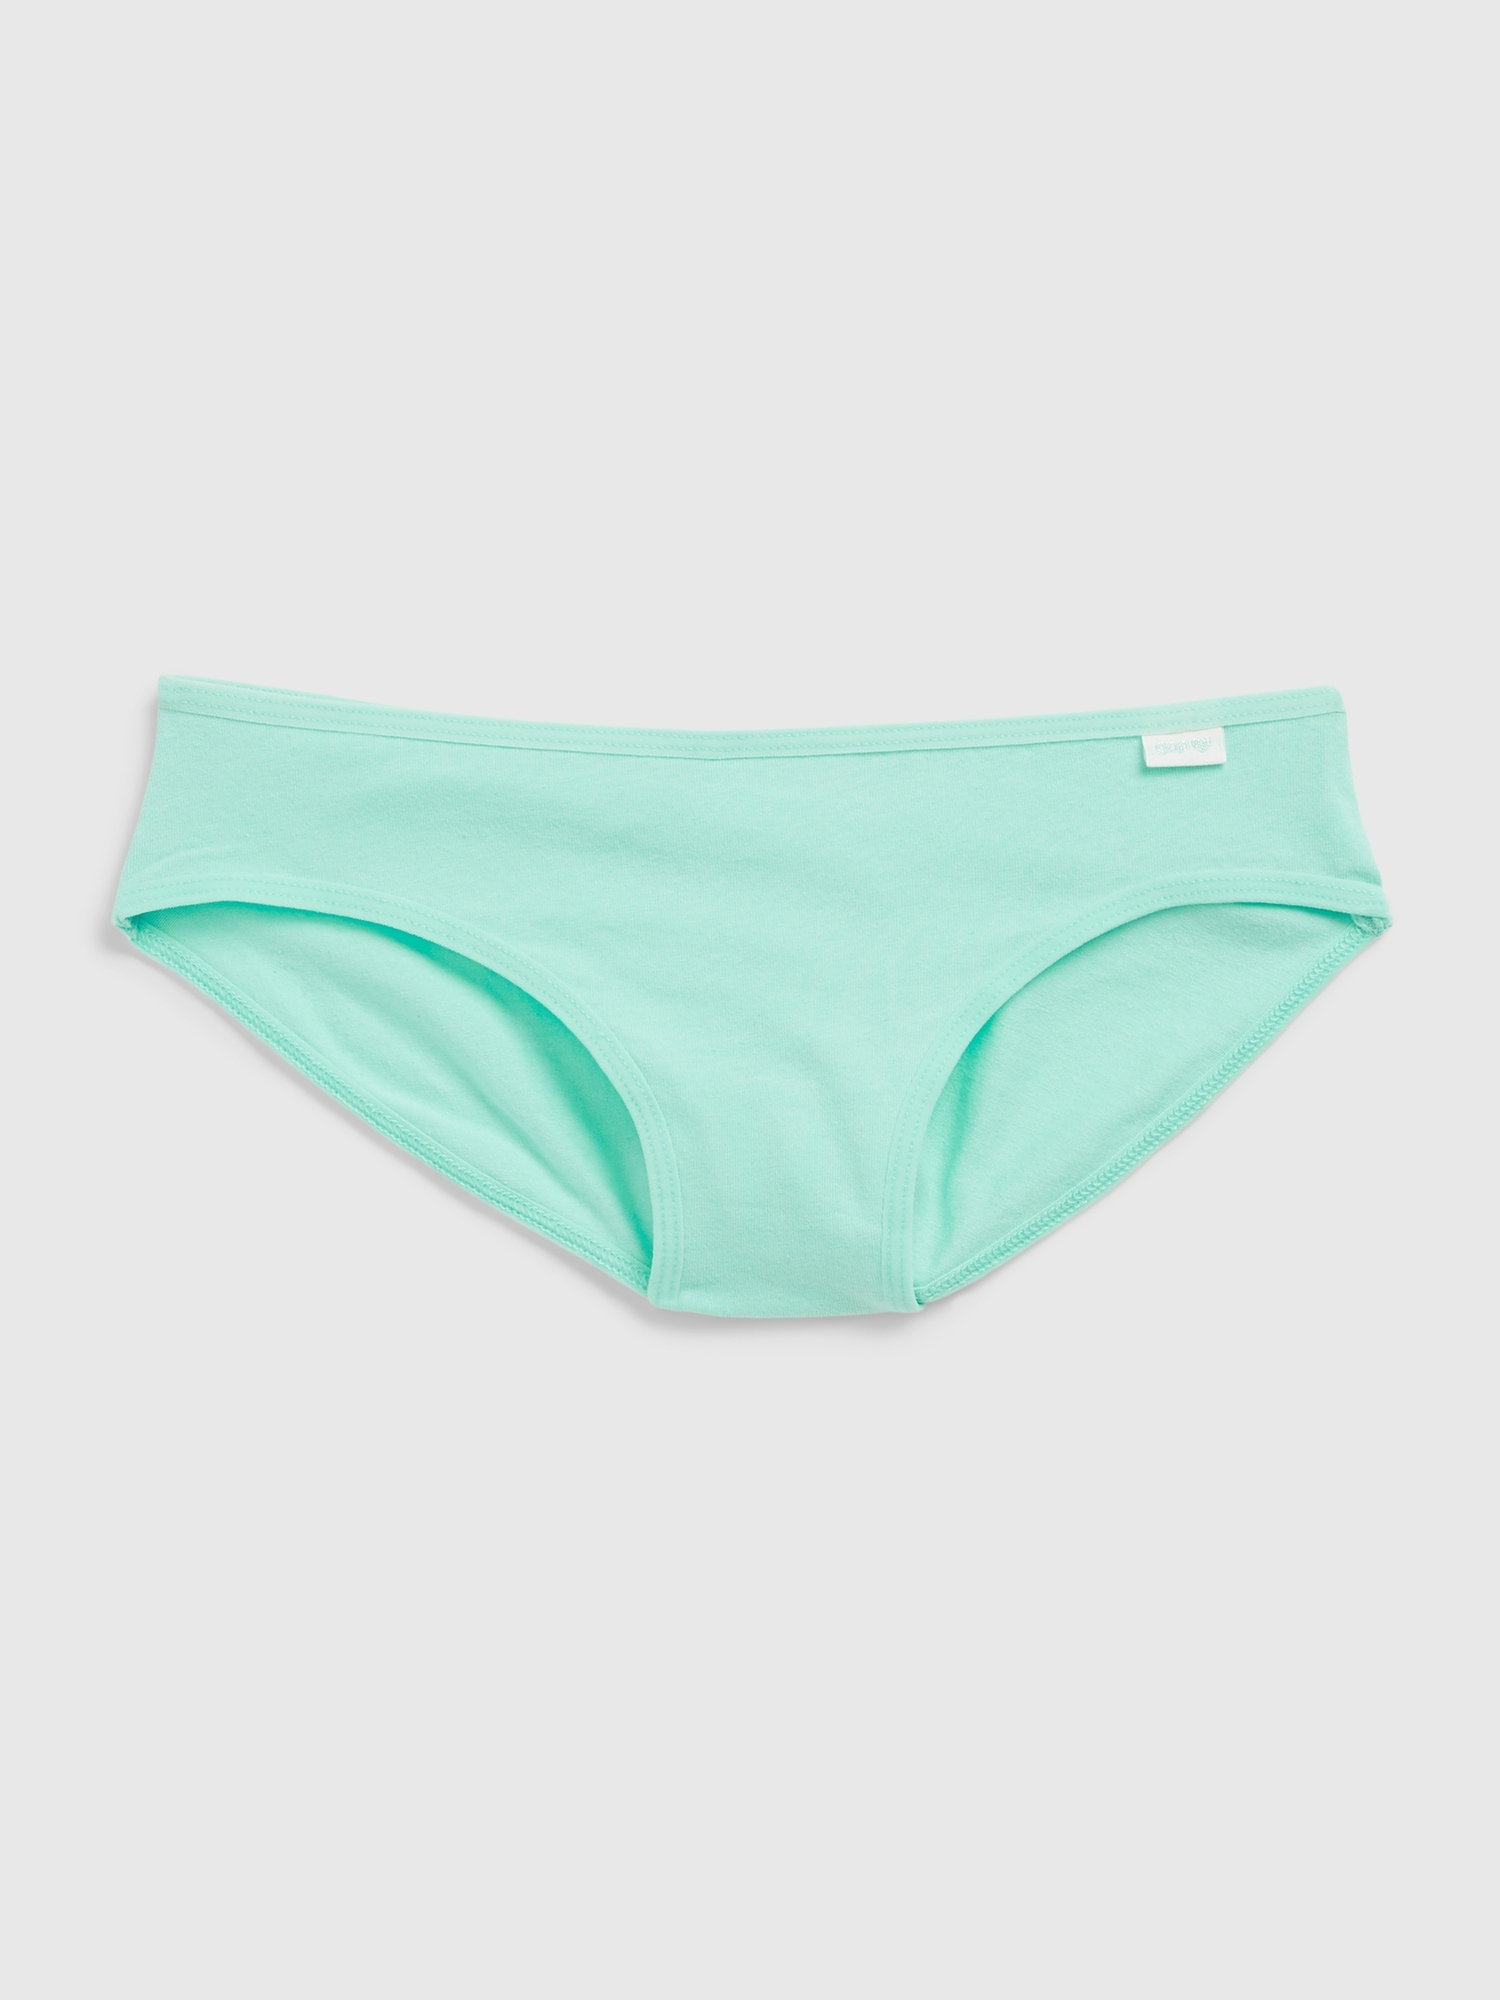 NWT Girls Greendog Bikini Underwear X-Small (2-3) Small (4-6) M(8-10) L(12- 14)